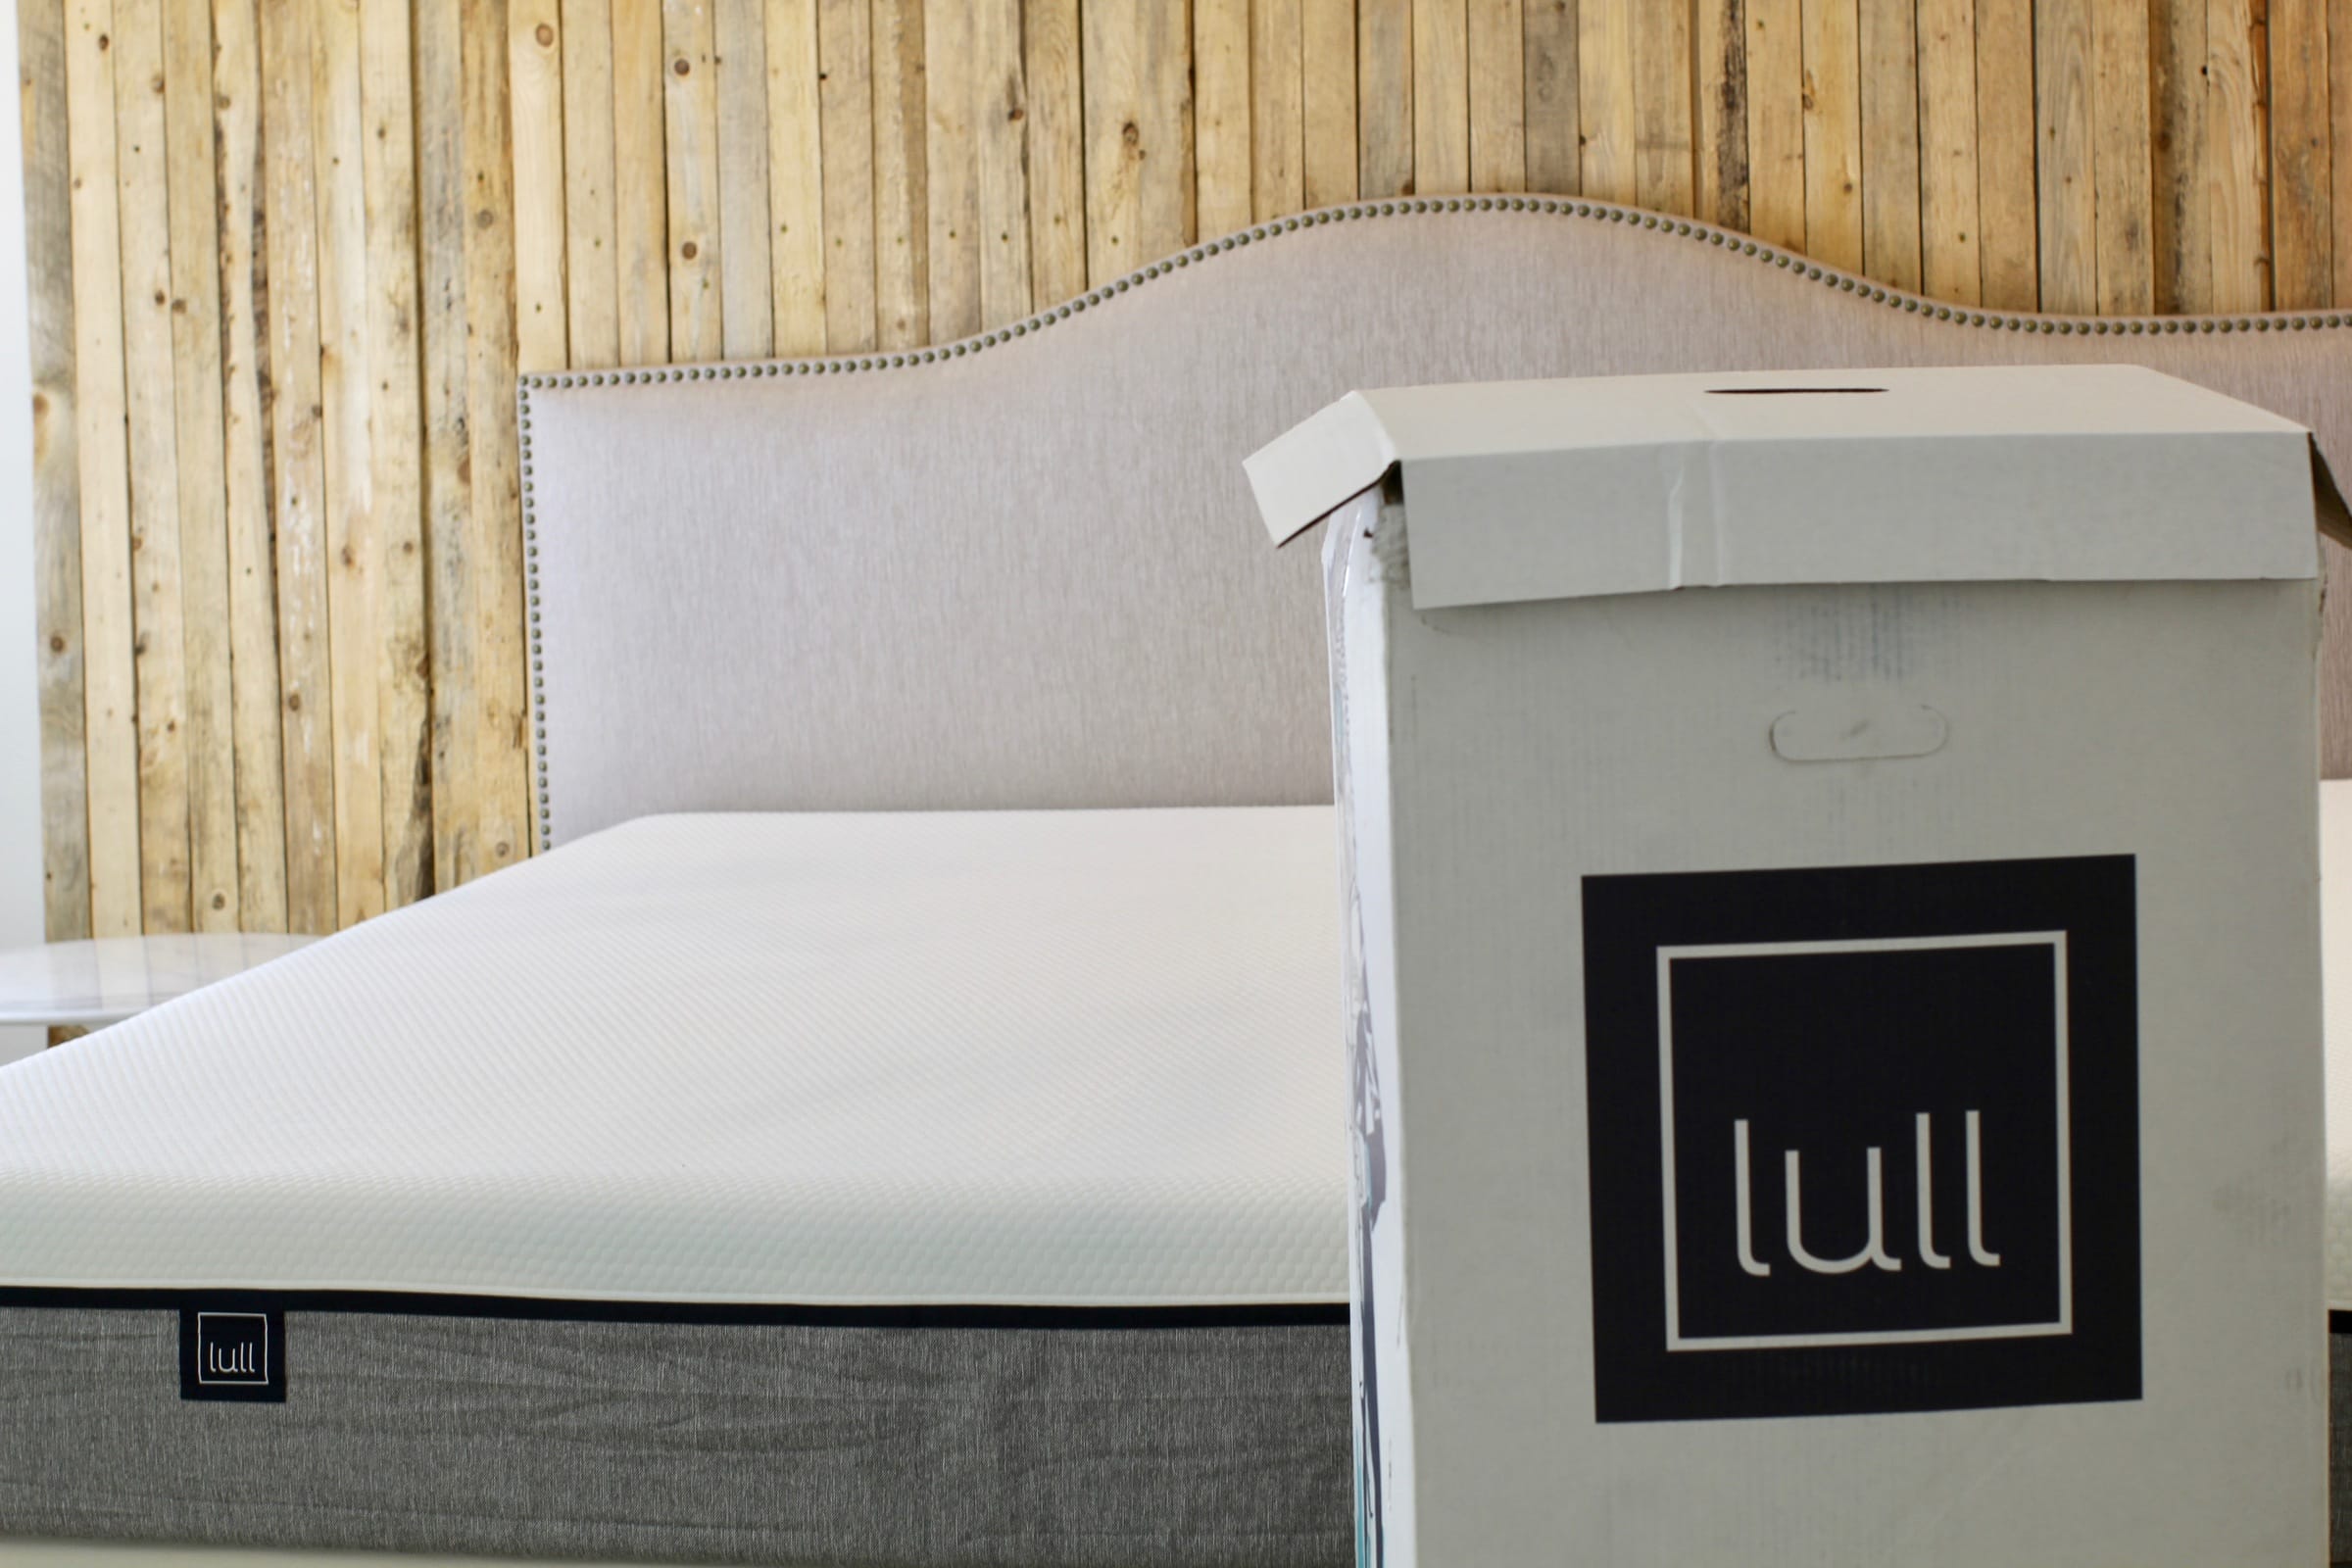 lull mattress reviews